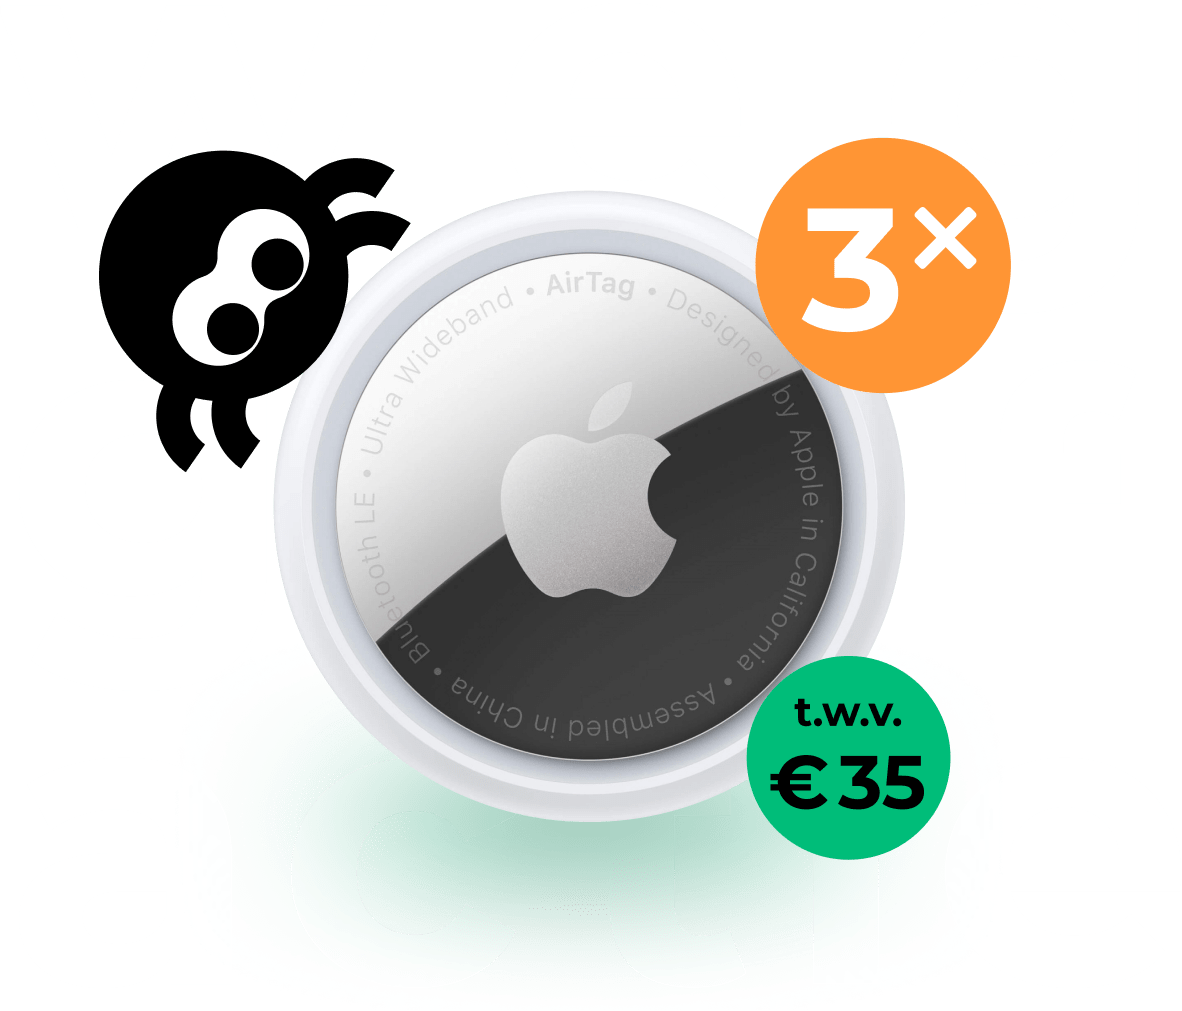 Ter promotie van ons platform, geven wij 3x een Apple AirTag t.w.v. 35 euro weg!